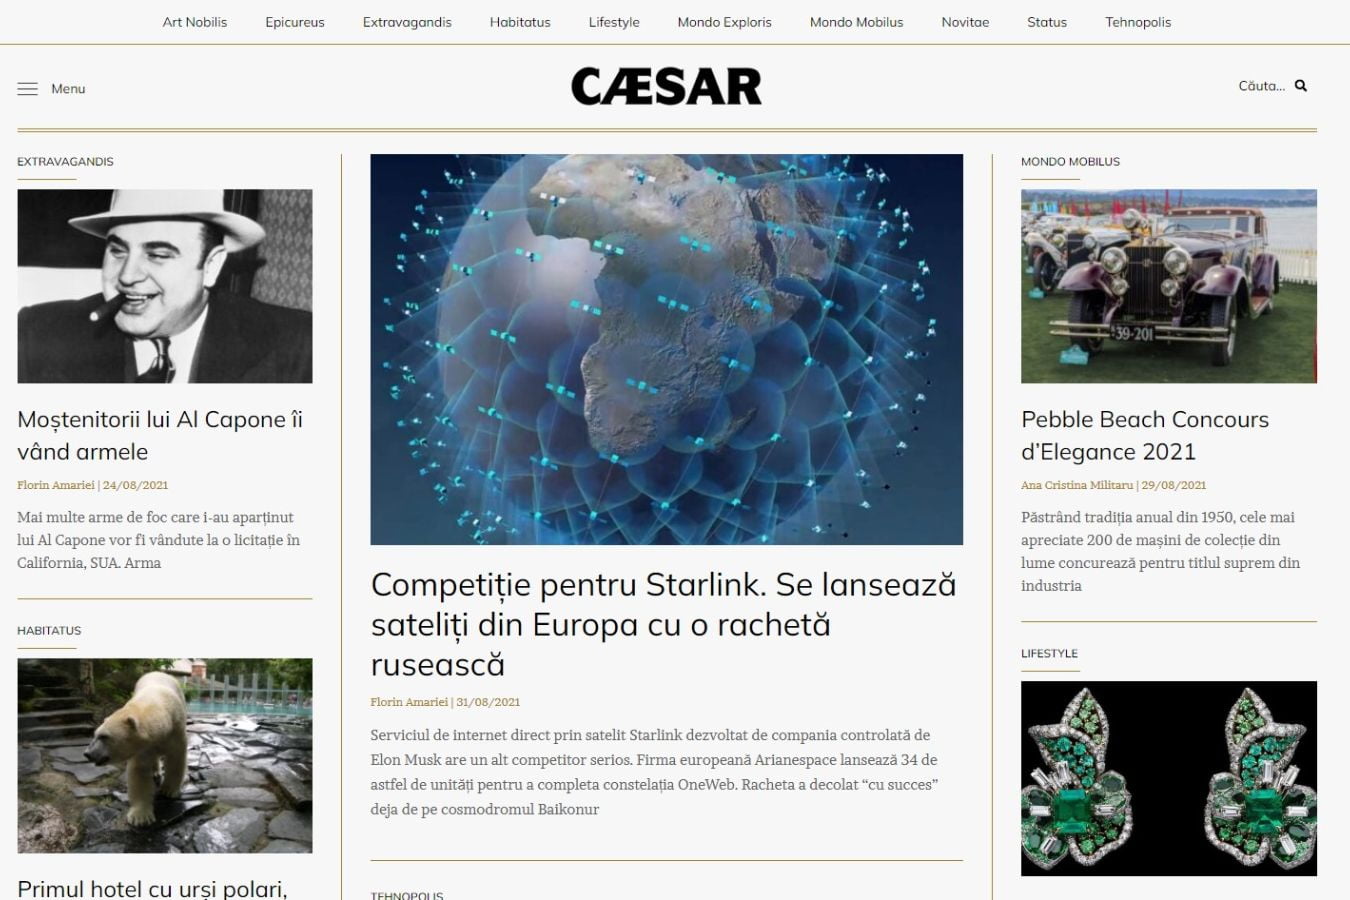 Caesar Emporium website design by designite